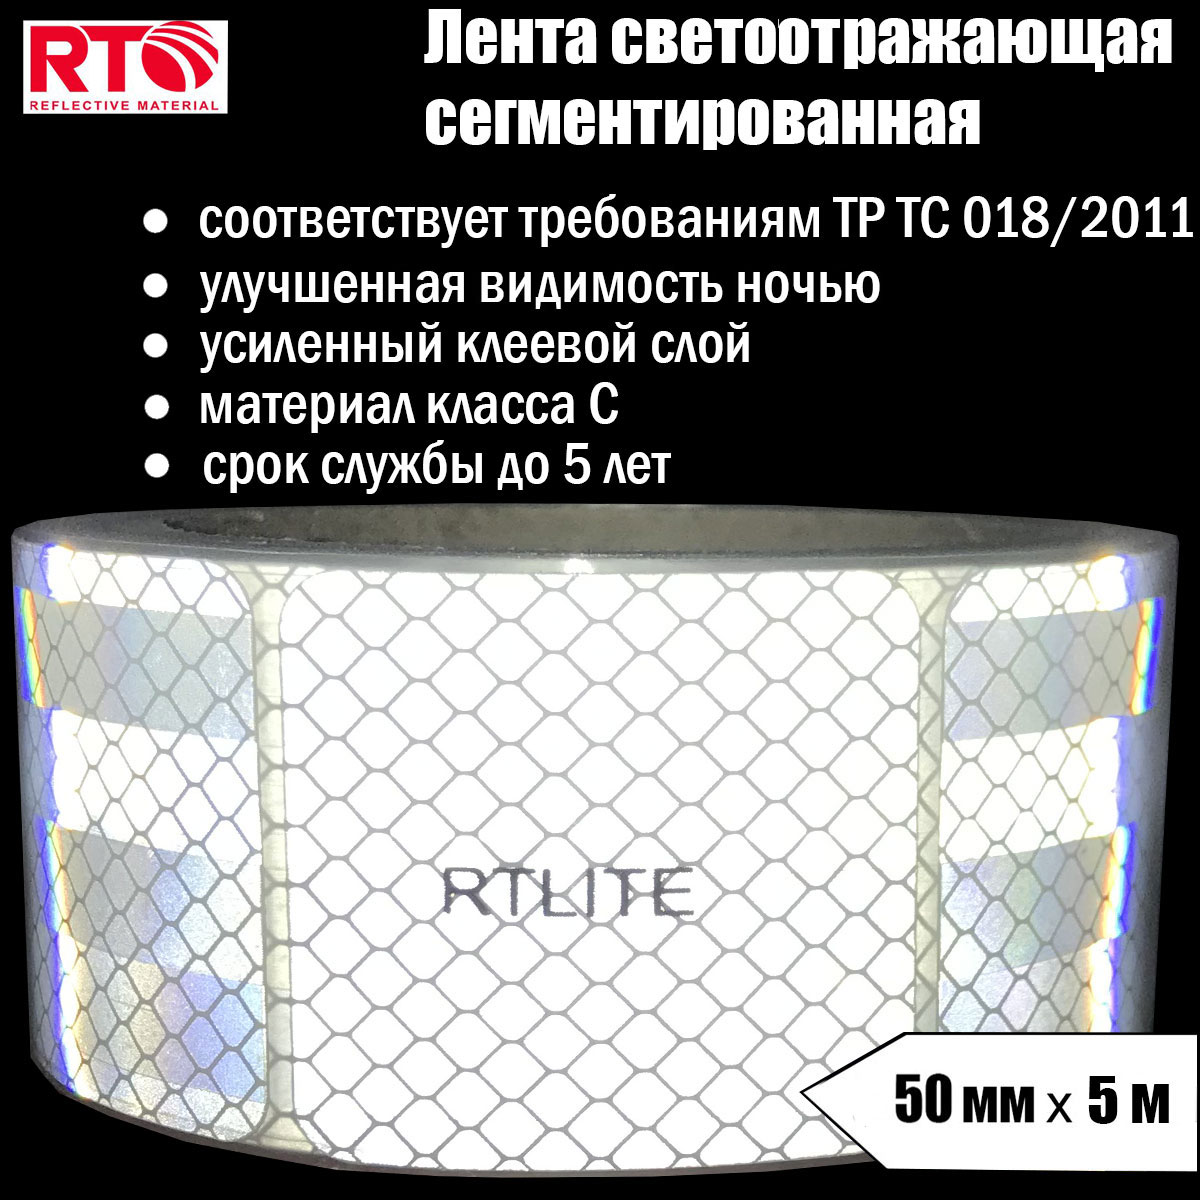 Лента светоотражающая сегментированная RTLITE RT-V104 для контурной маркировки, 50мм х 5м лента светоотражающая сегментированная rtlite rt v104 для контурной маркировки 50мм х 5м